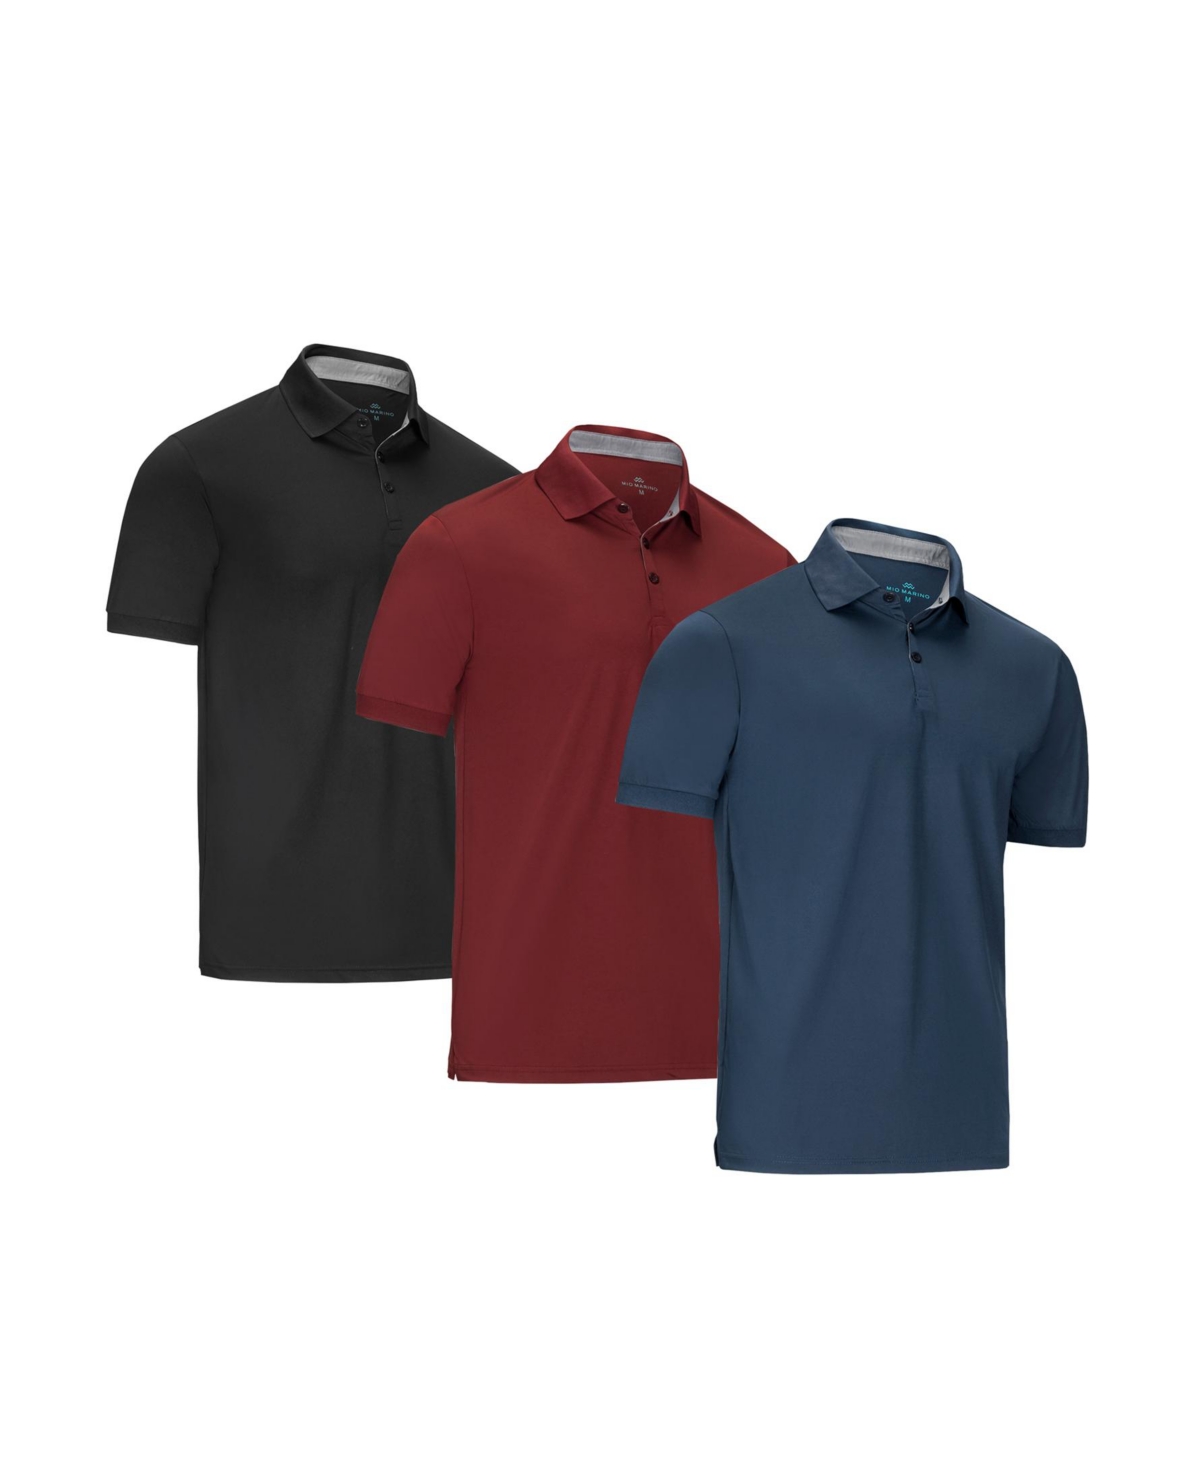 Men's Designer Golf Polo Shirt - 3 Pack - Khaki, salmon red, red